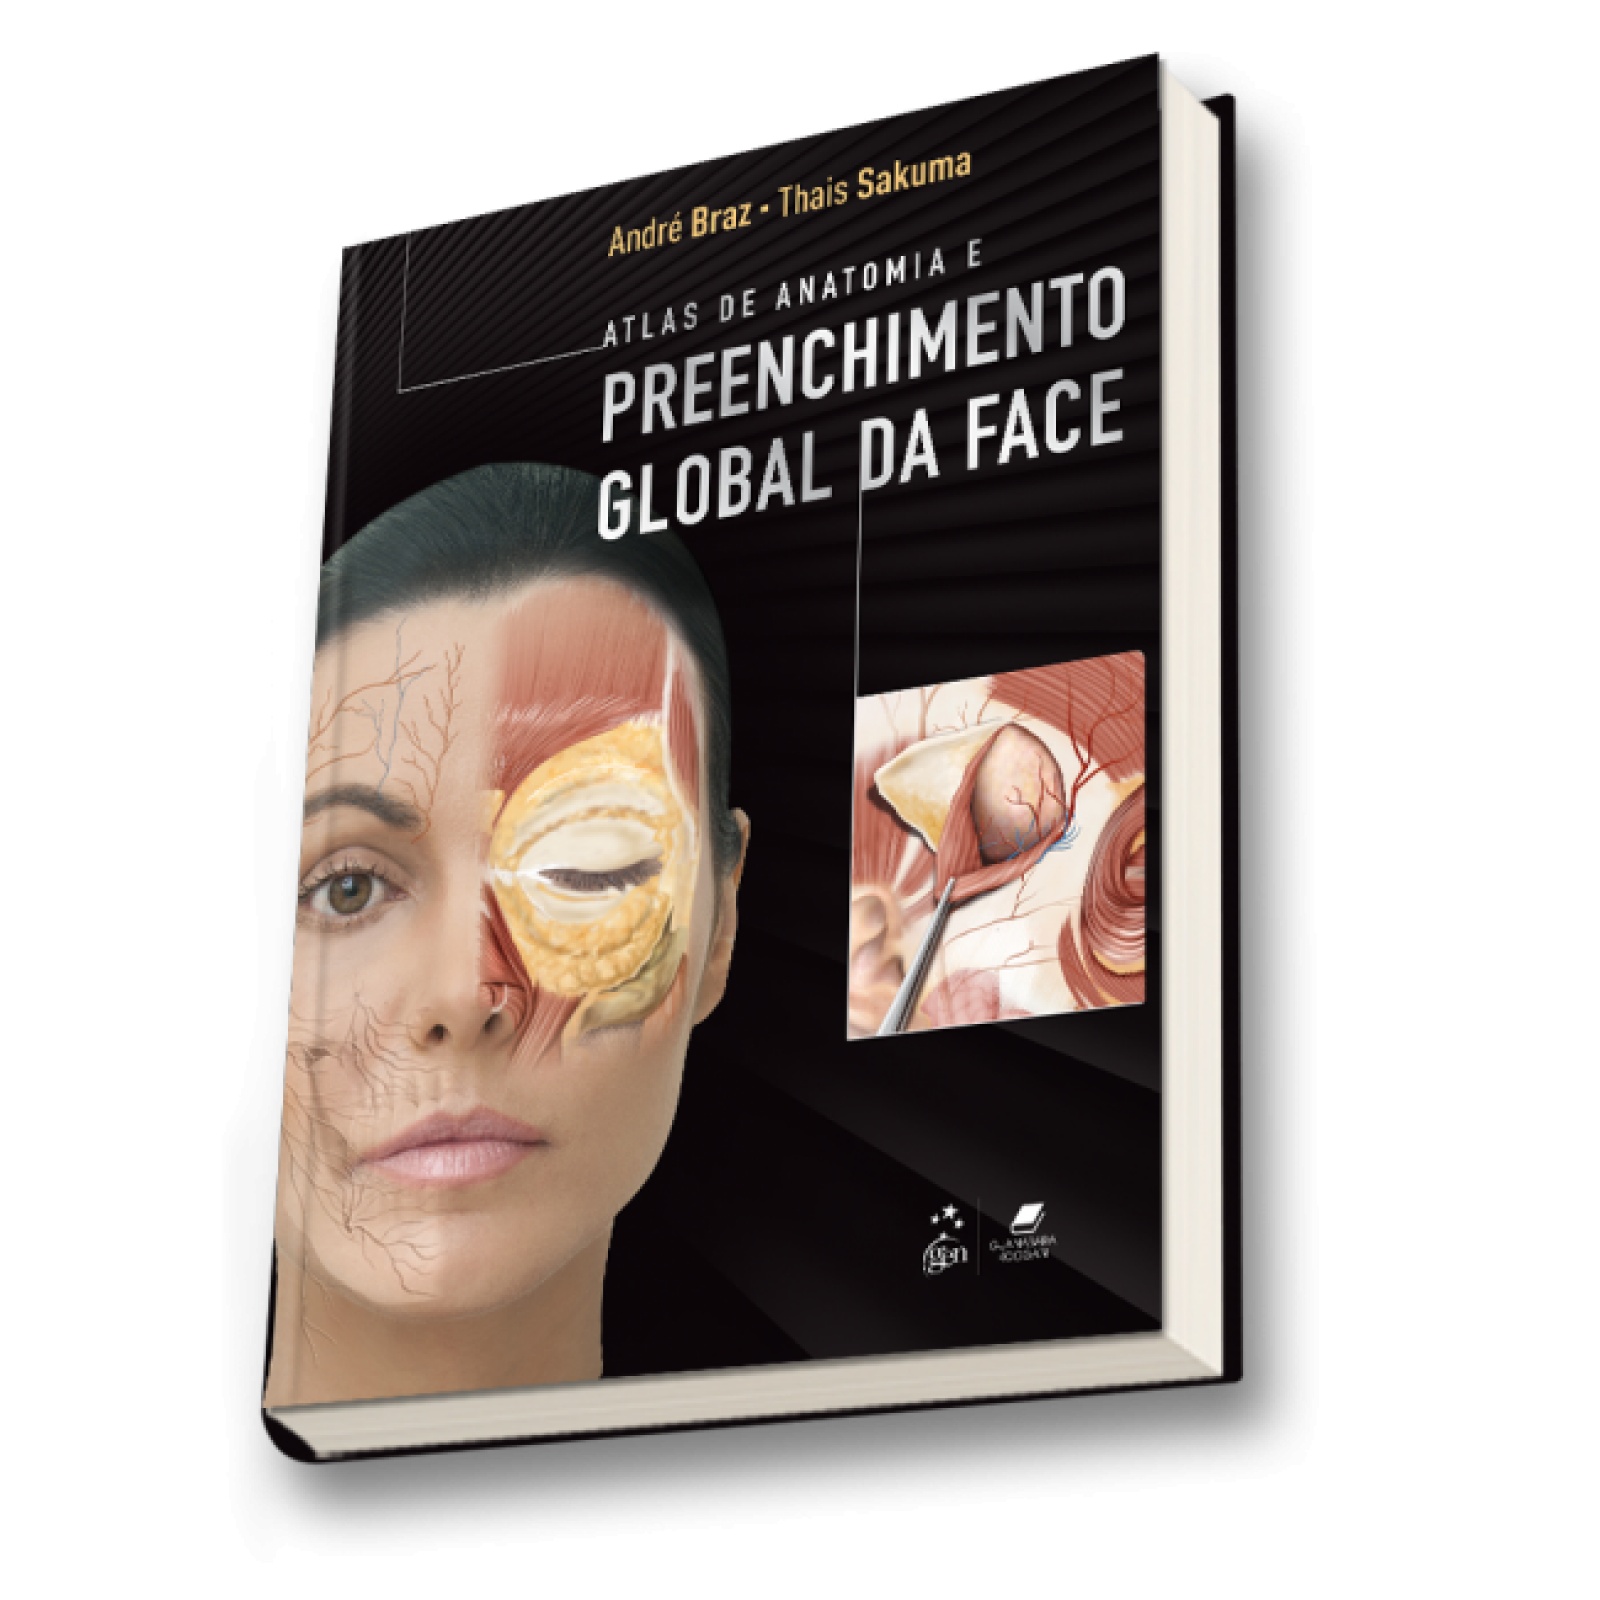 Atlas De Anatomia E Prenchimento Global Da Face